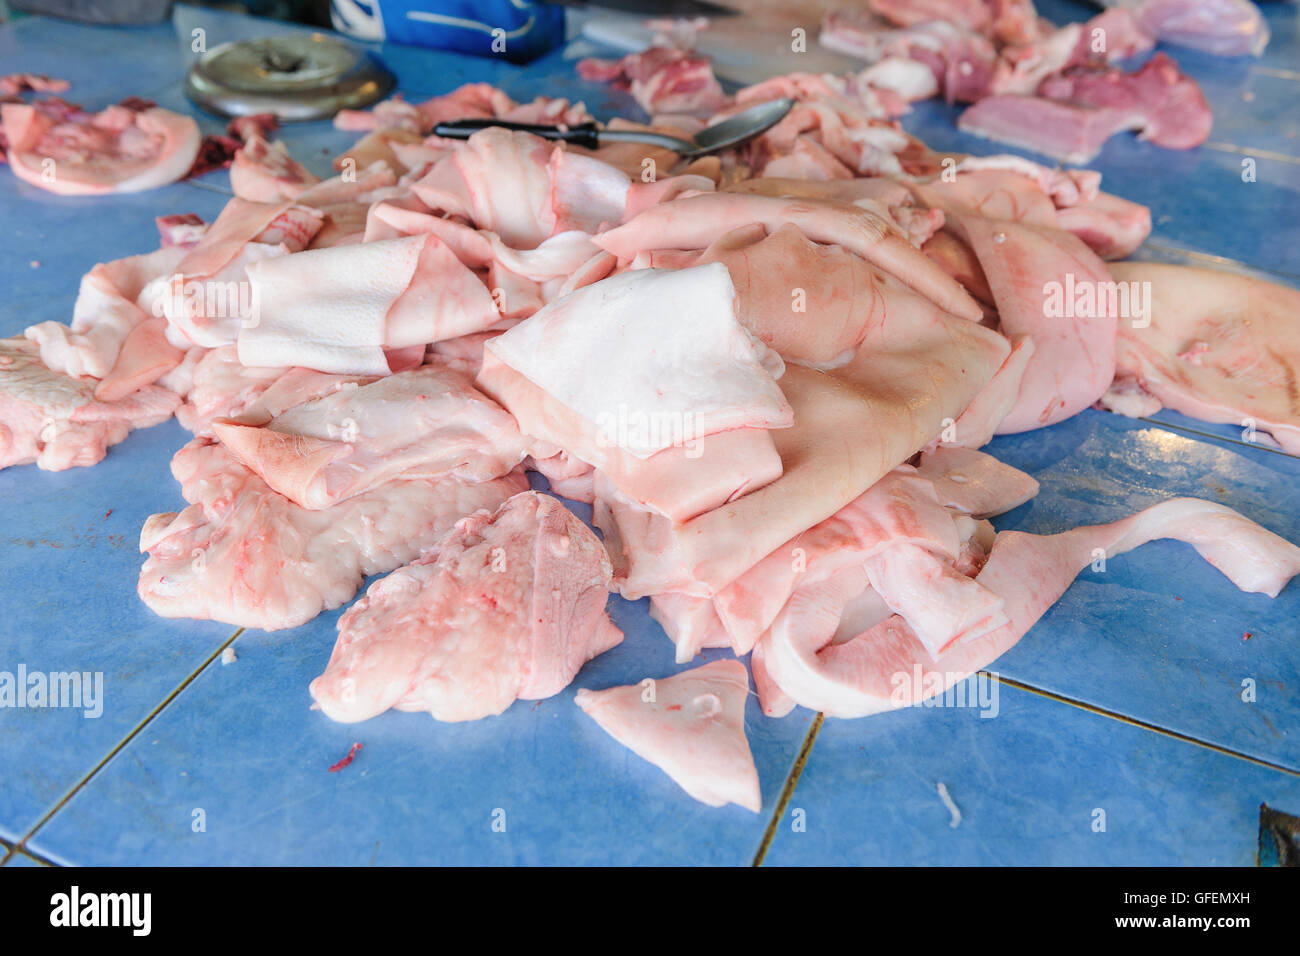 raw pork skin at pork butcher Stock Photo